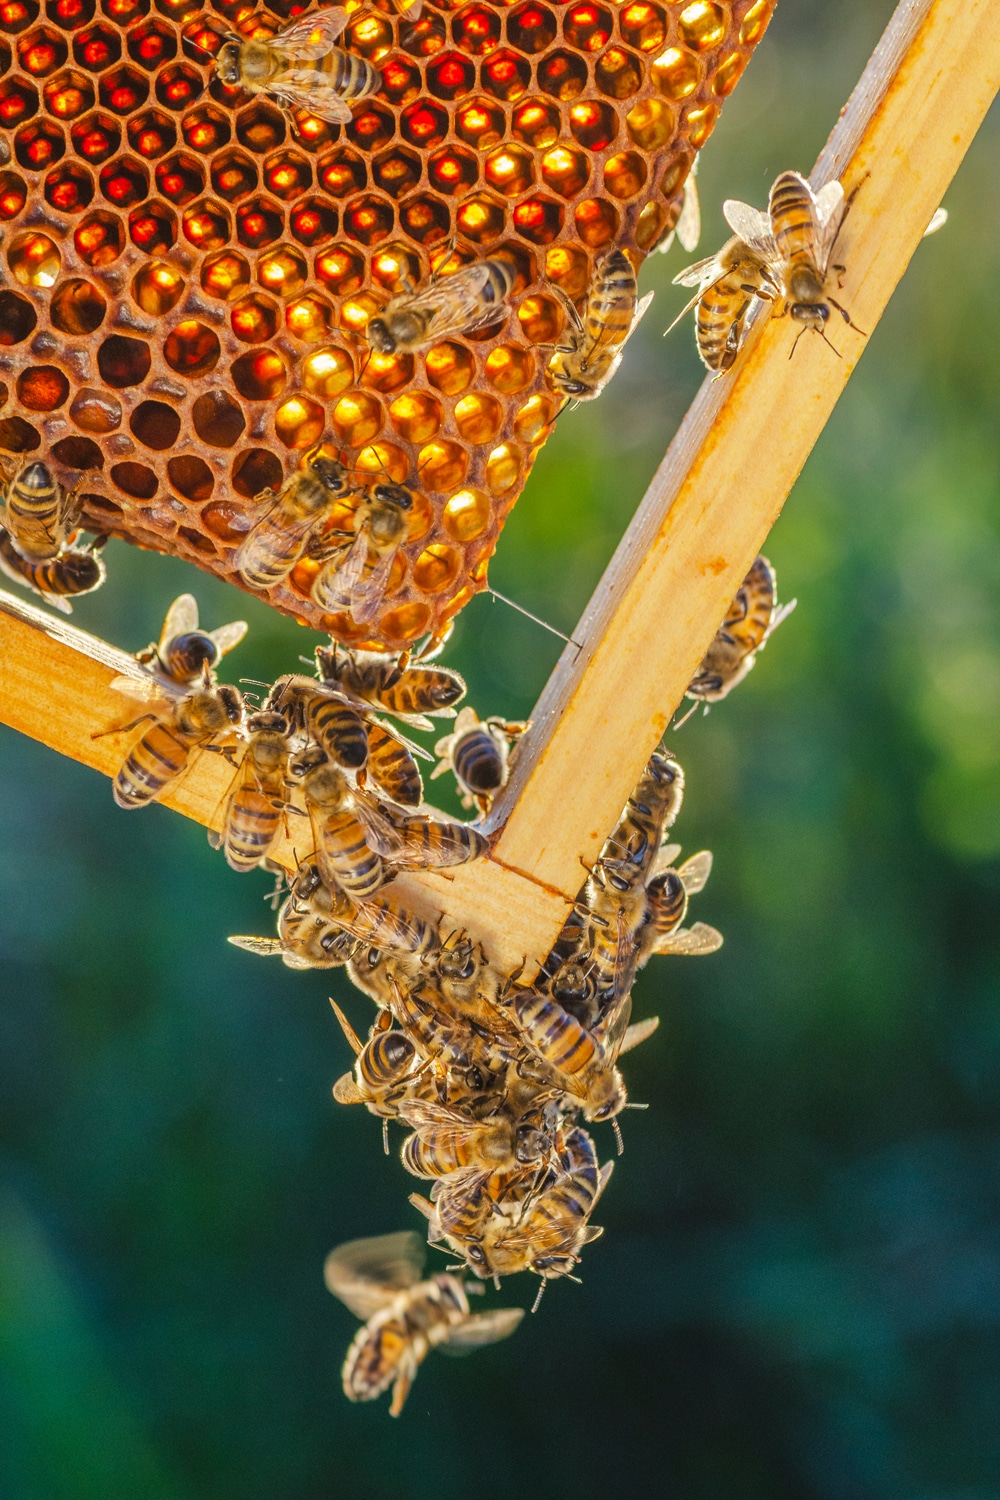 Comment utiliser la cire d'abeille en cosmétique et soin ?